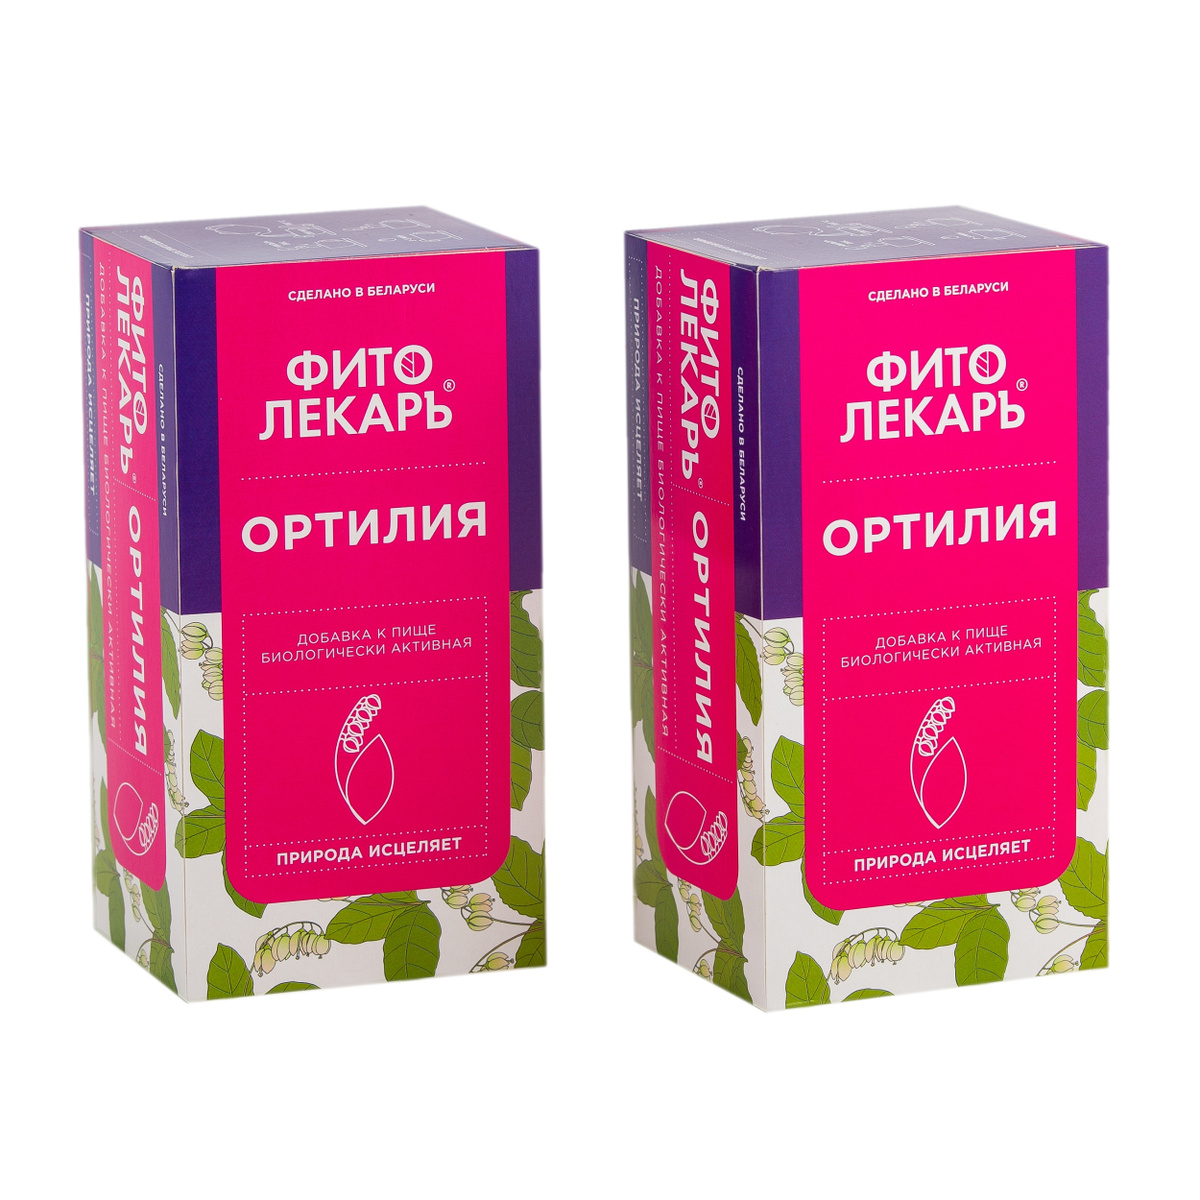 Чай "ФитоЛекарь" Ортилия для поддержания репродуктивного здоровья женщин, 2 шт. по 25 х 1,7 г саше пакетиков #1